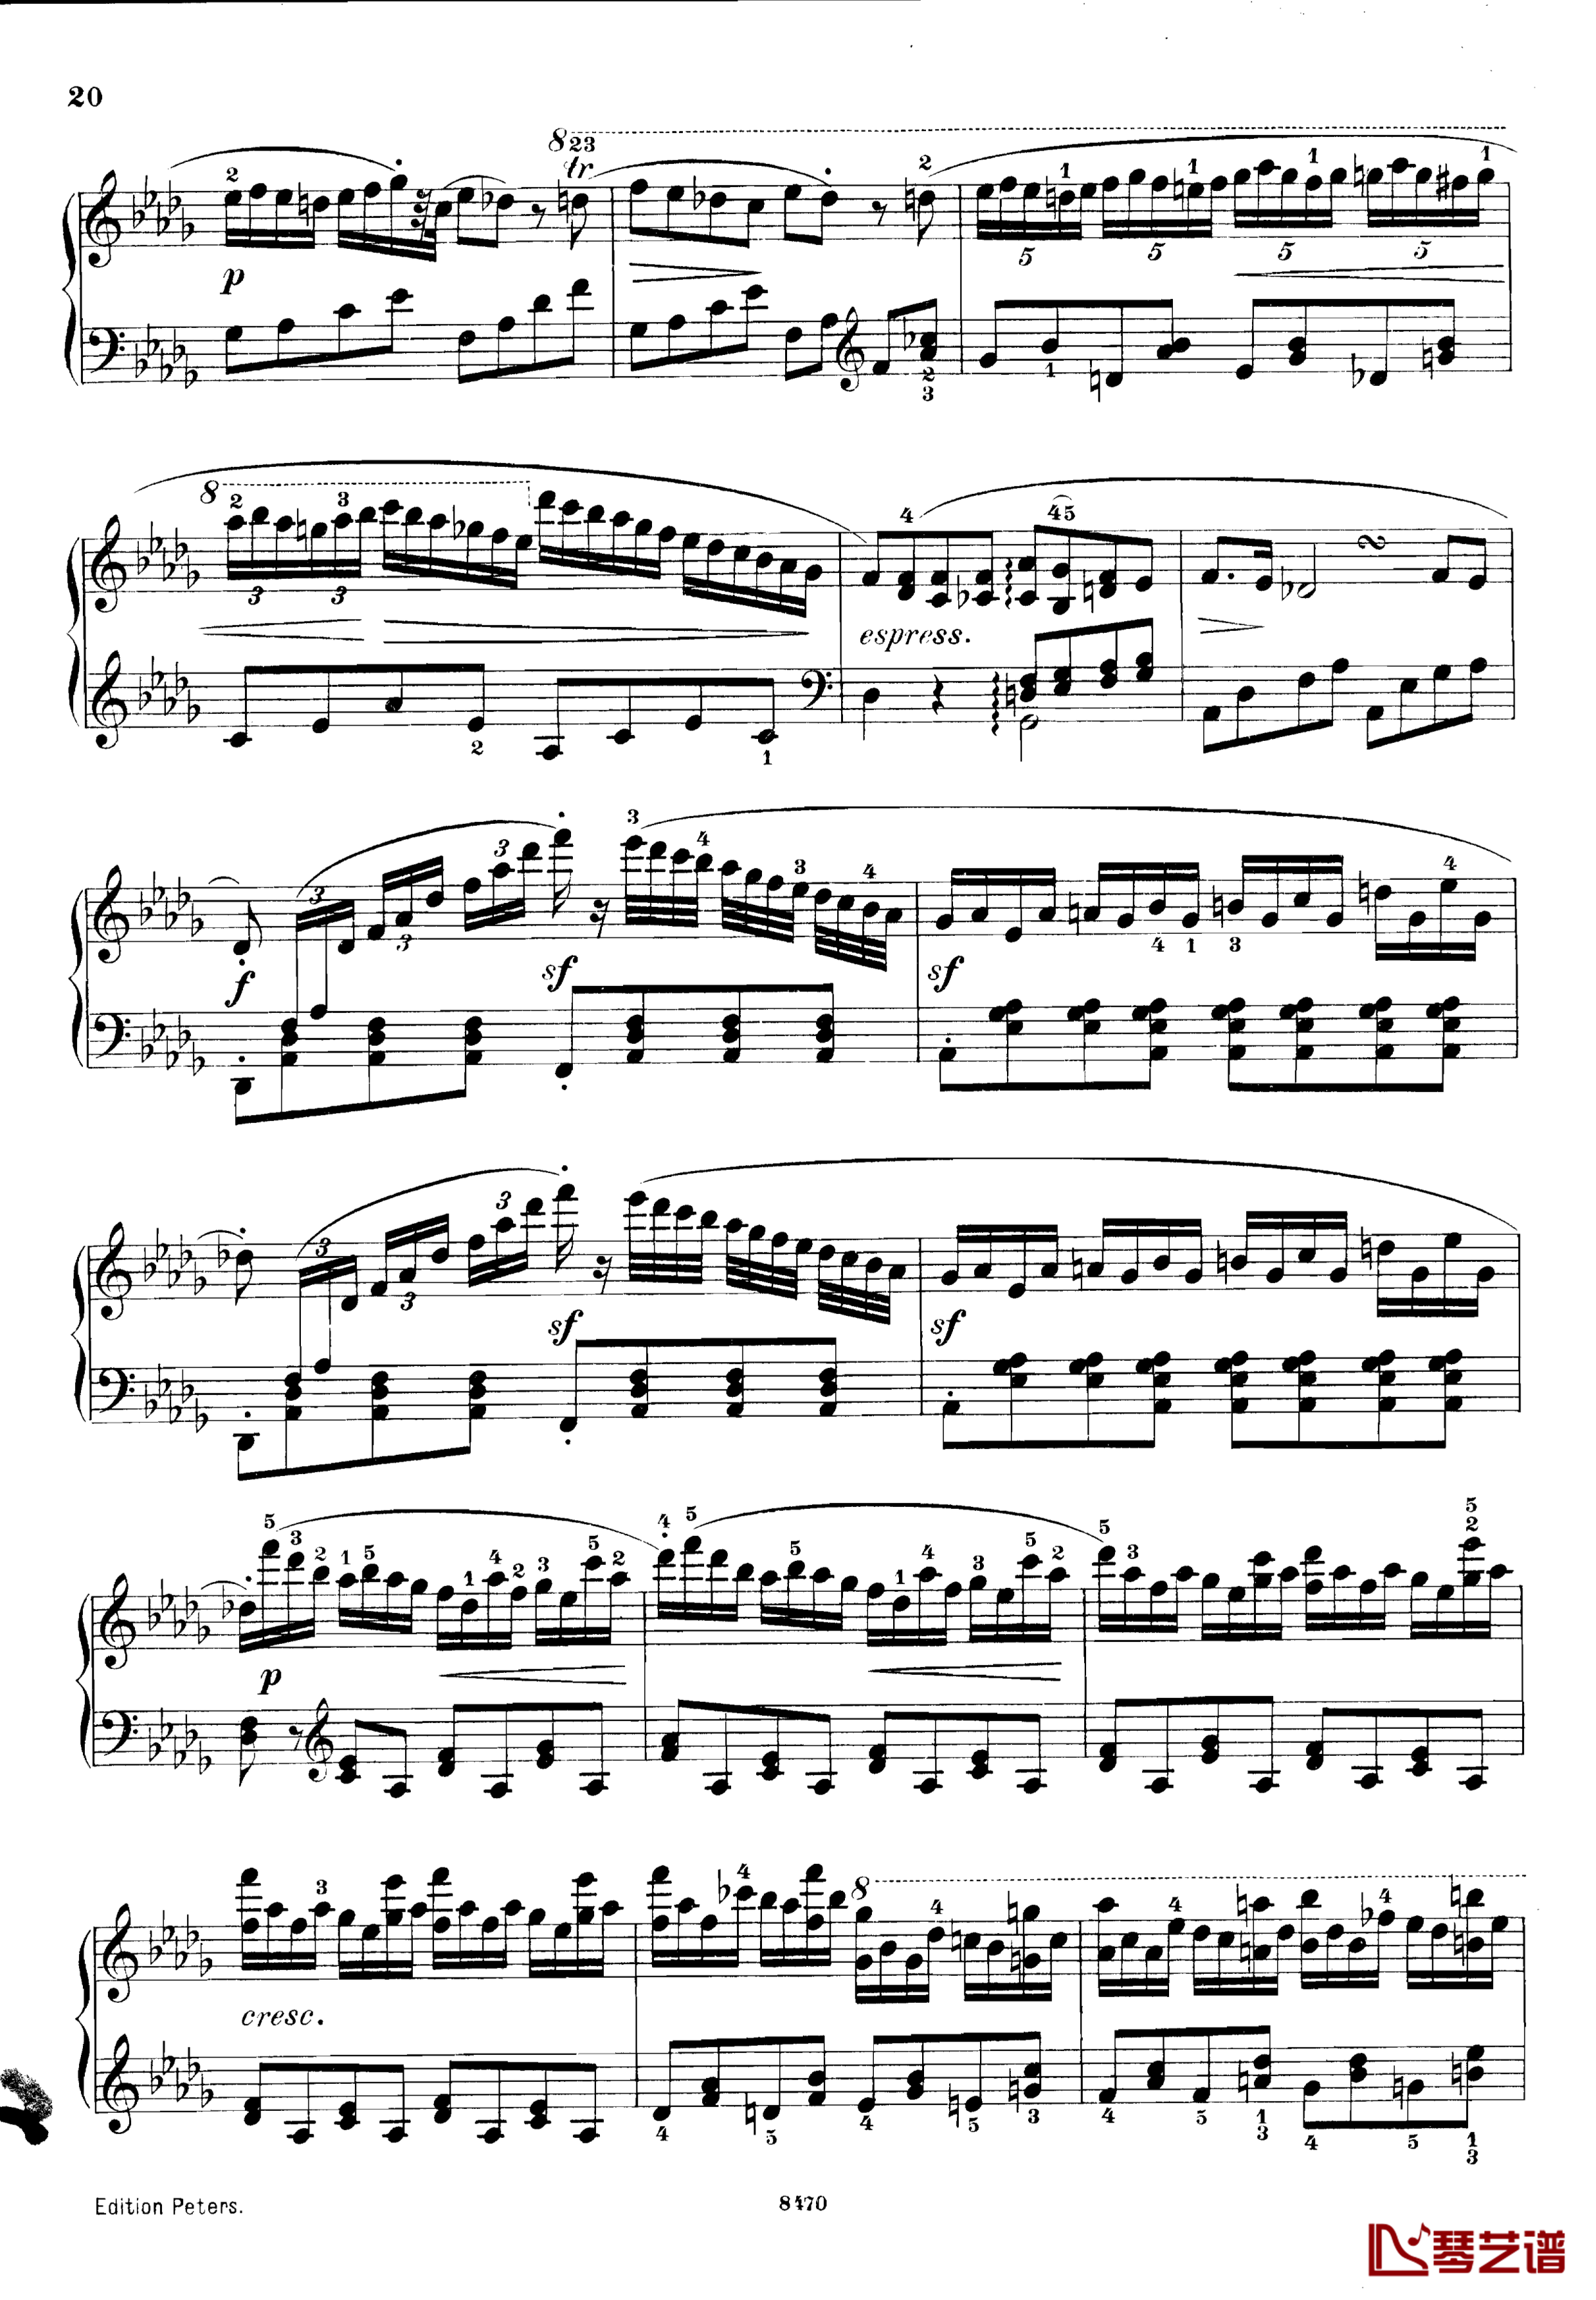 升c小调第三钢琴协奏曲Op.55钢琴谱-克里斯蒂安-里斯20